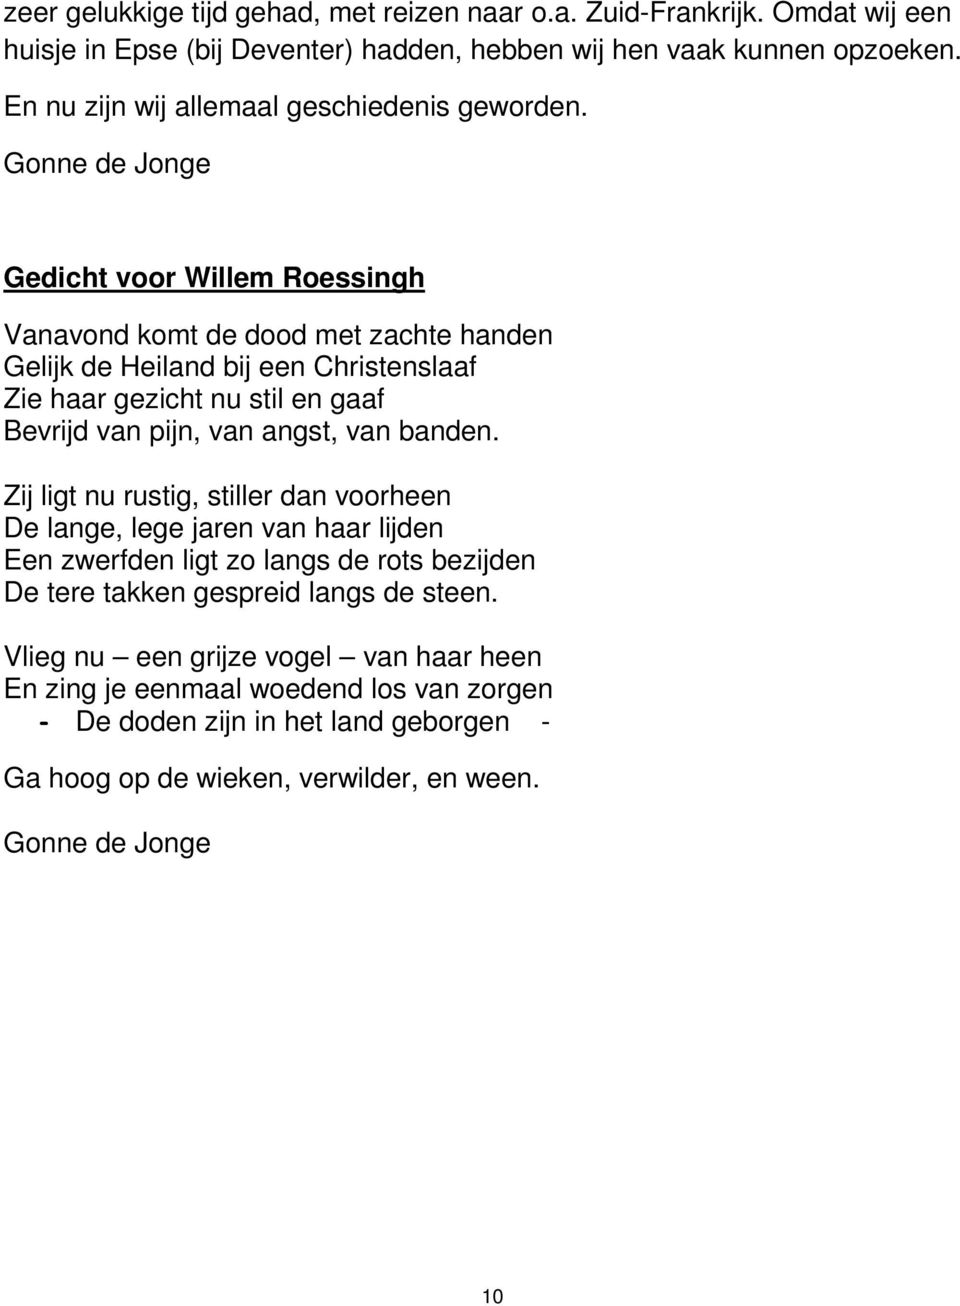 Gonne de Jonge Gedicht voor Willem Roessingh Vanavond komt de dood met zachte handen Gelijk de Heiland bij een Christenslaaf Zie haar gezicht nu stil en gaaf Bevrijd van pijn, van